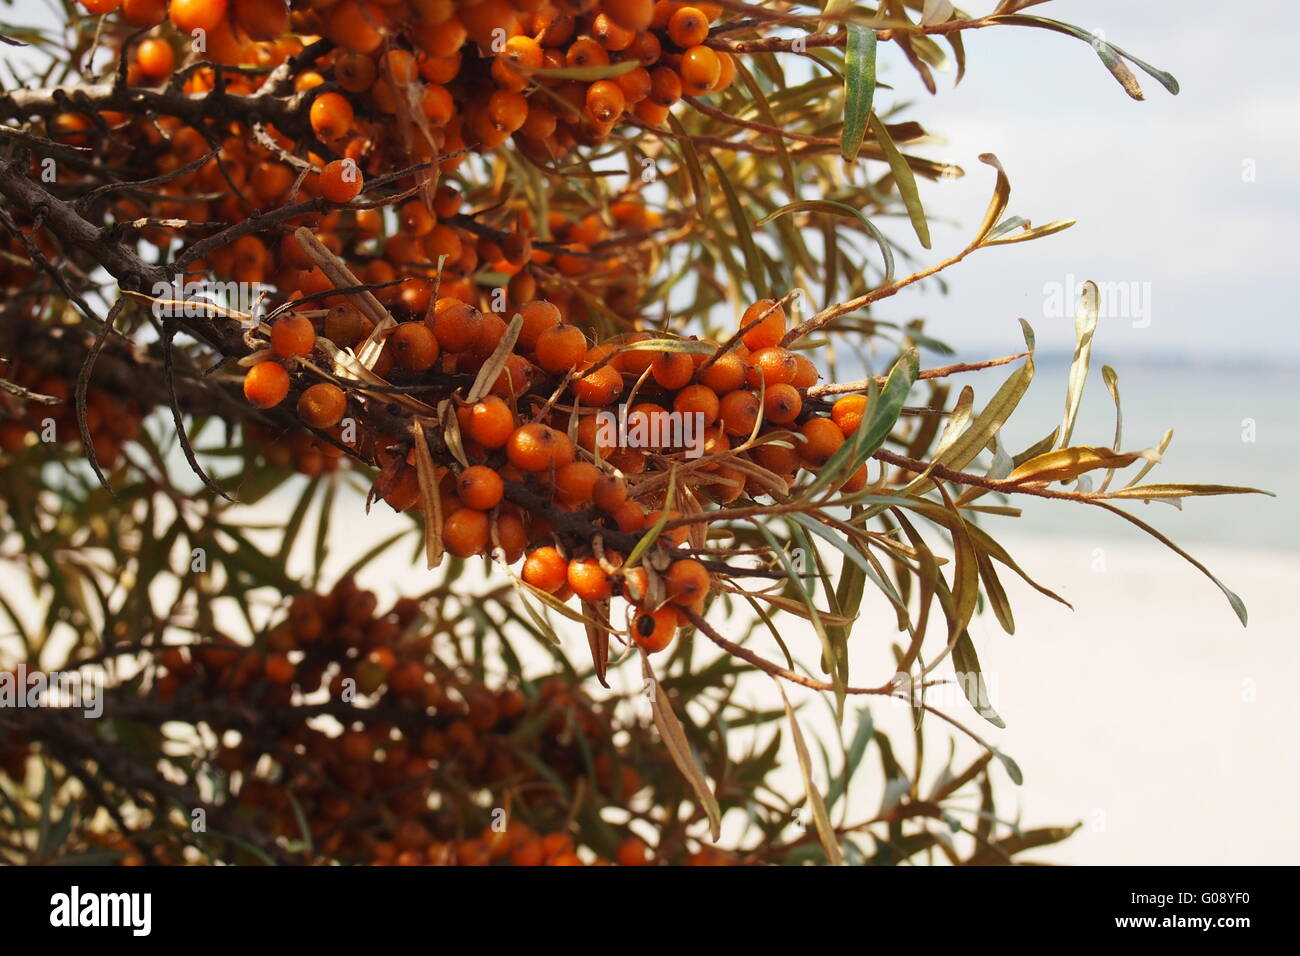 Sallow Thorn bacche di olivello spinoso Foto Stock